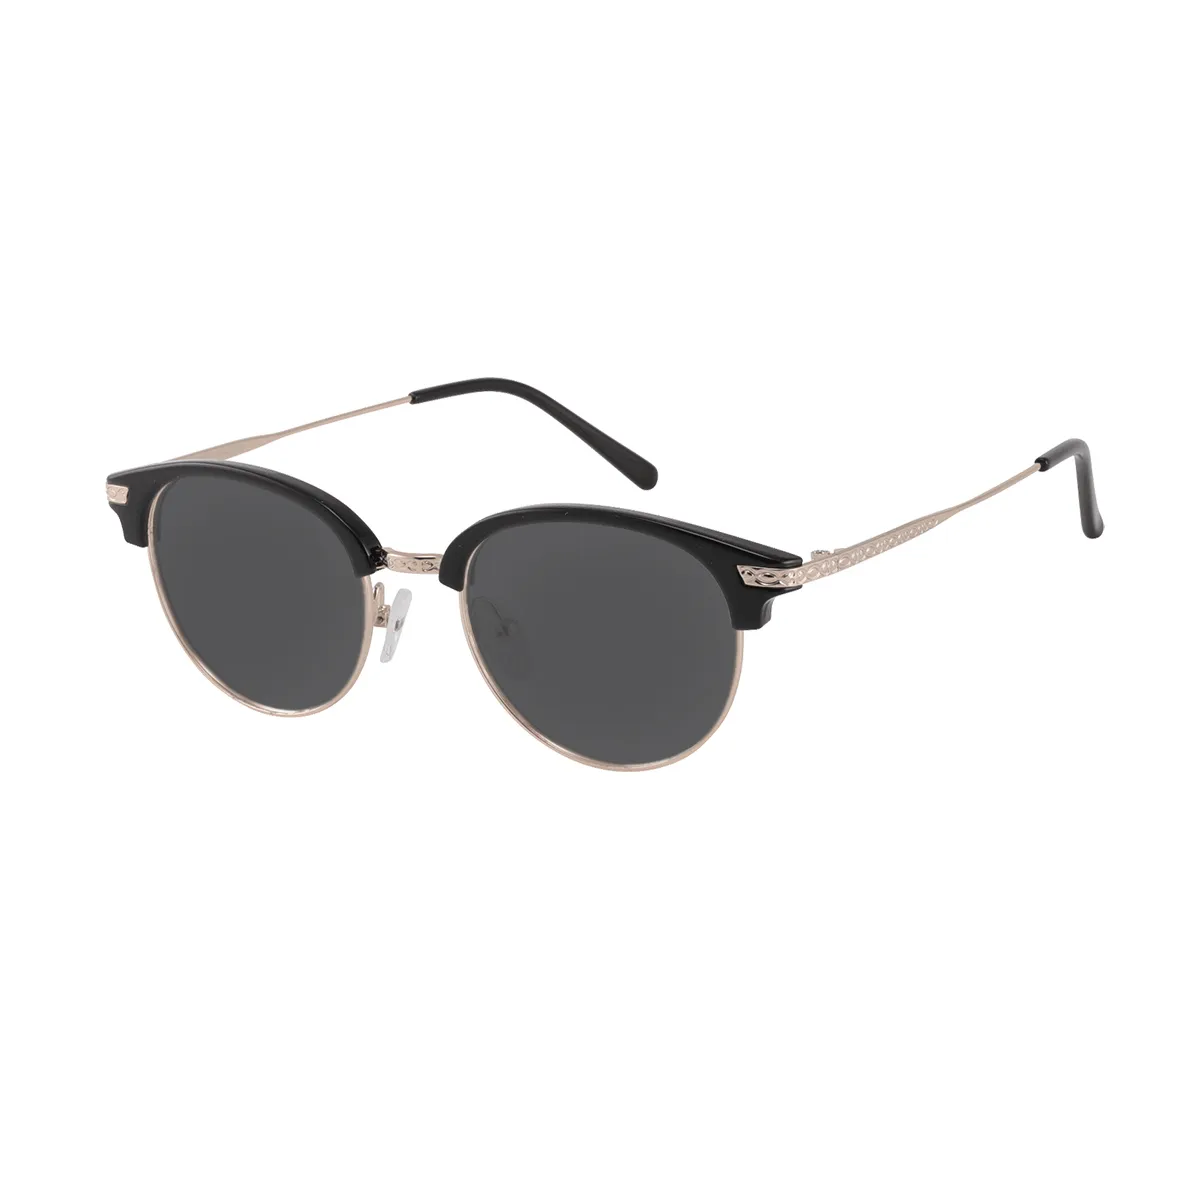 Swenson - Browline Black Sunglasses for Men & Women